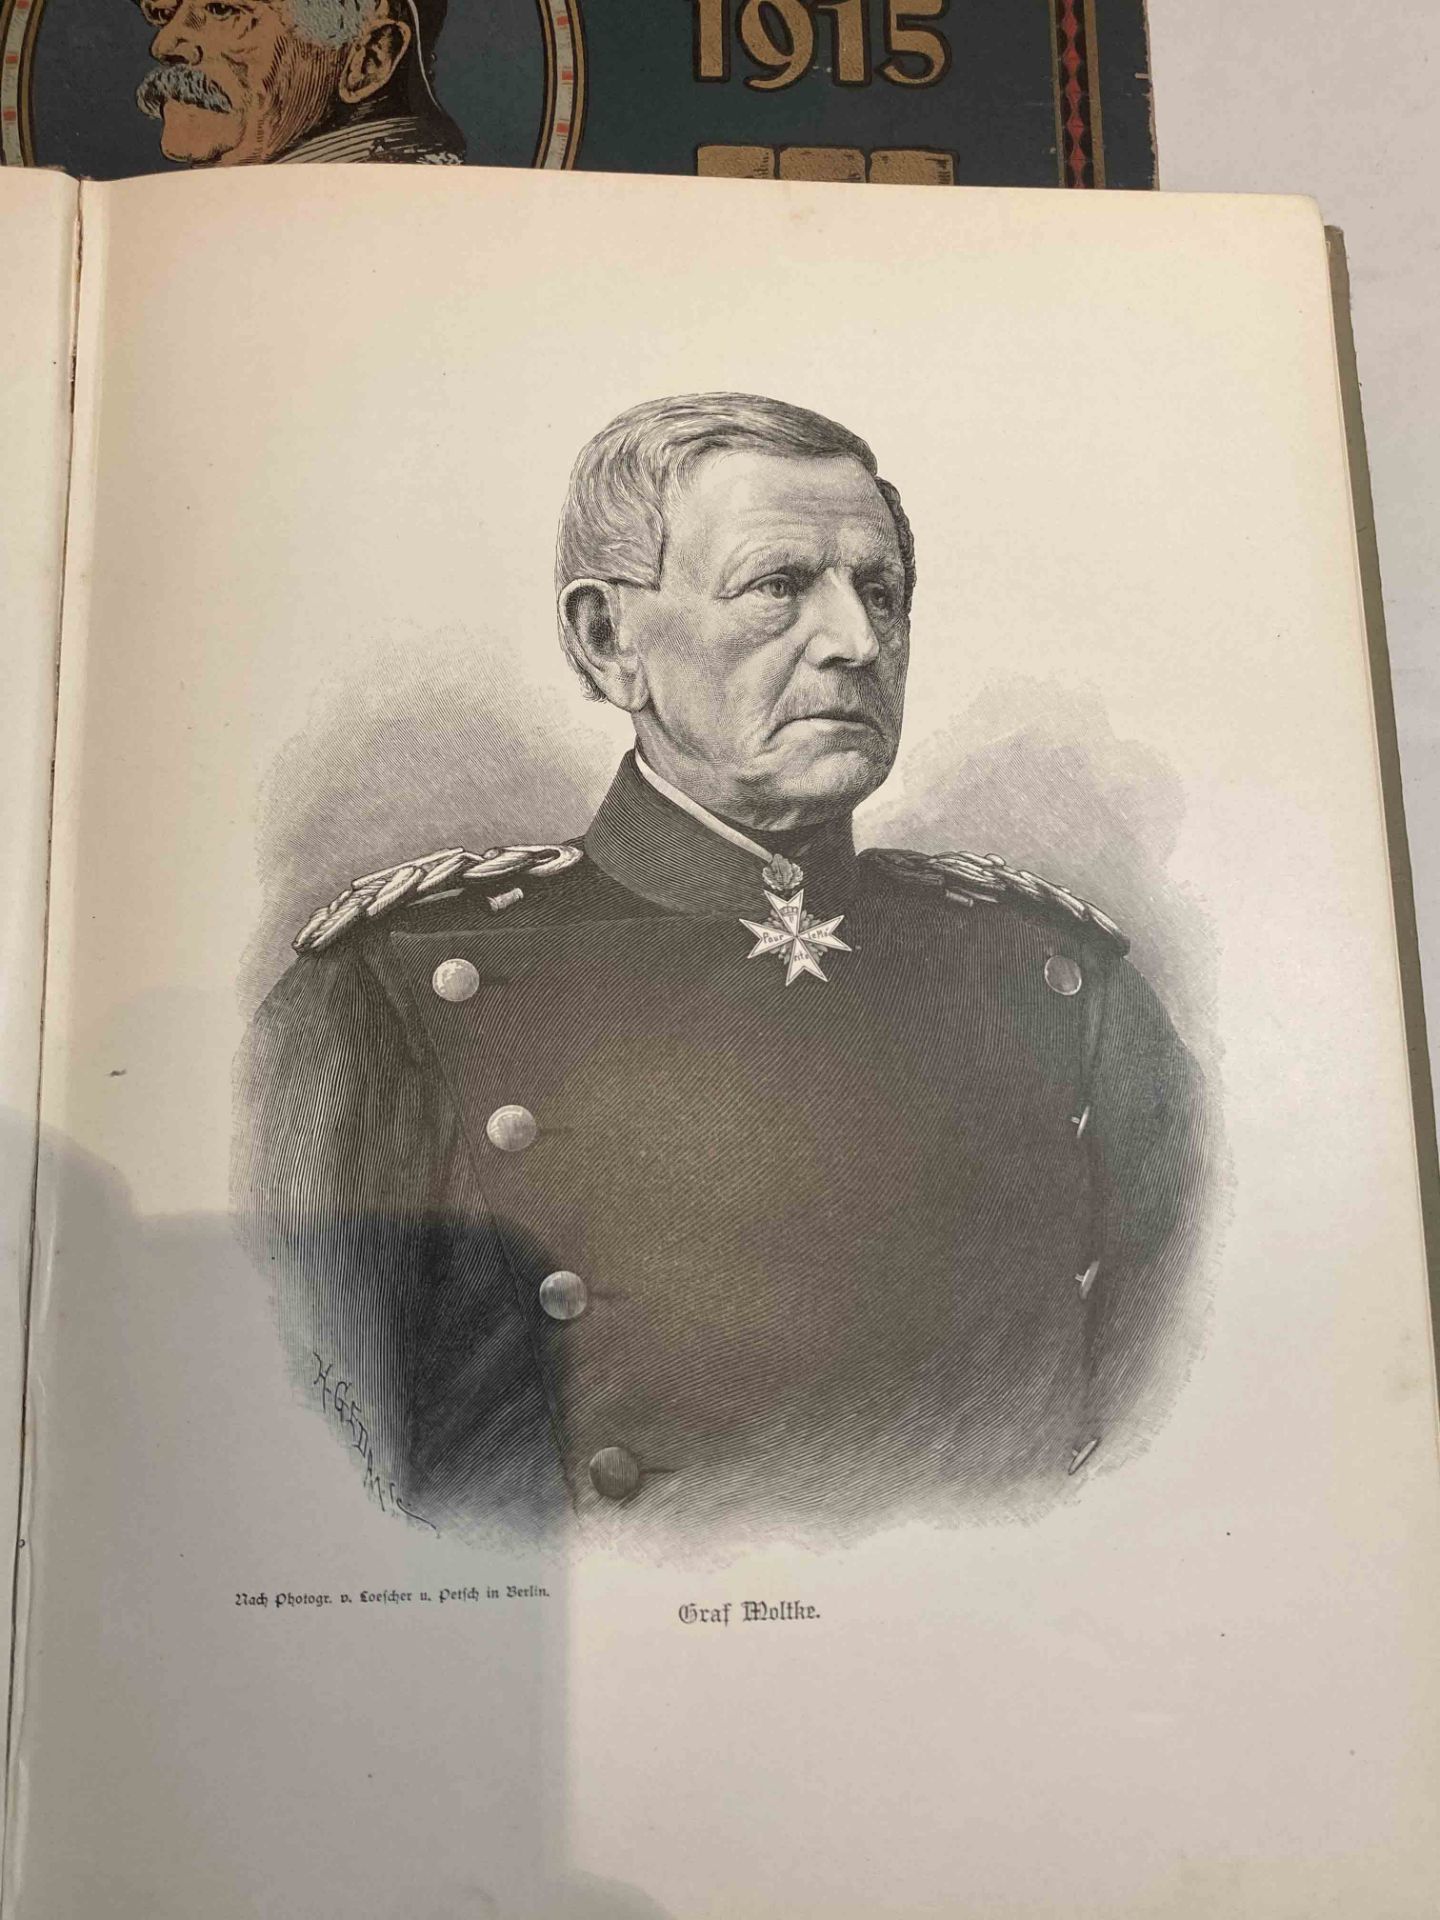 Lot- Guerre de 1870-71. Deux ouvrages illustrés et reliés, en langue allemande, BISMARCK 1815-1915 - Bild 8 aus 10